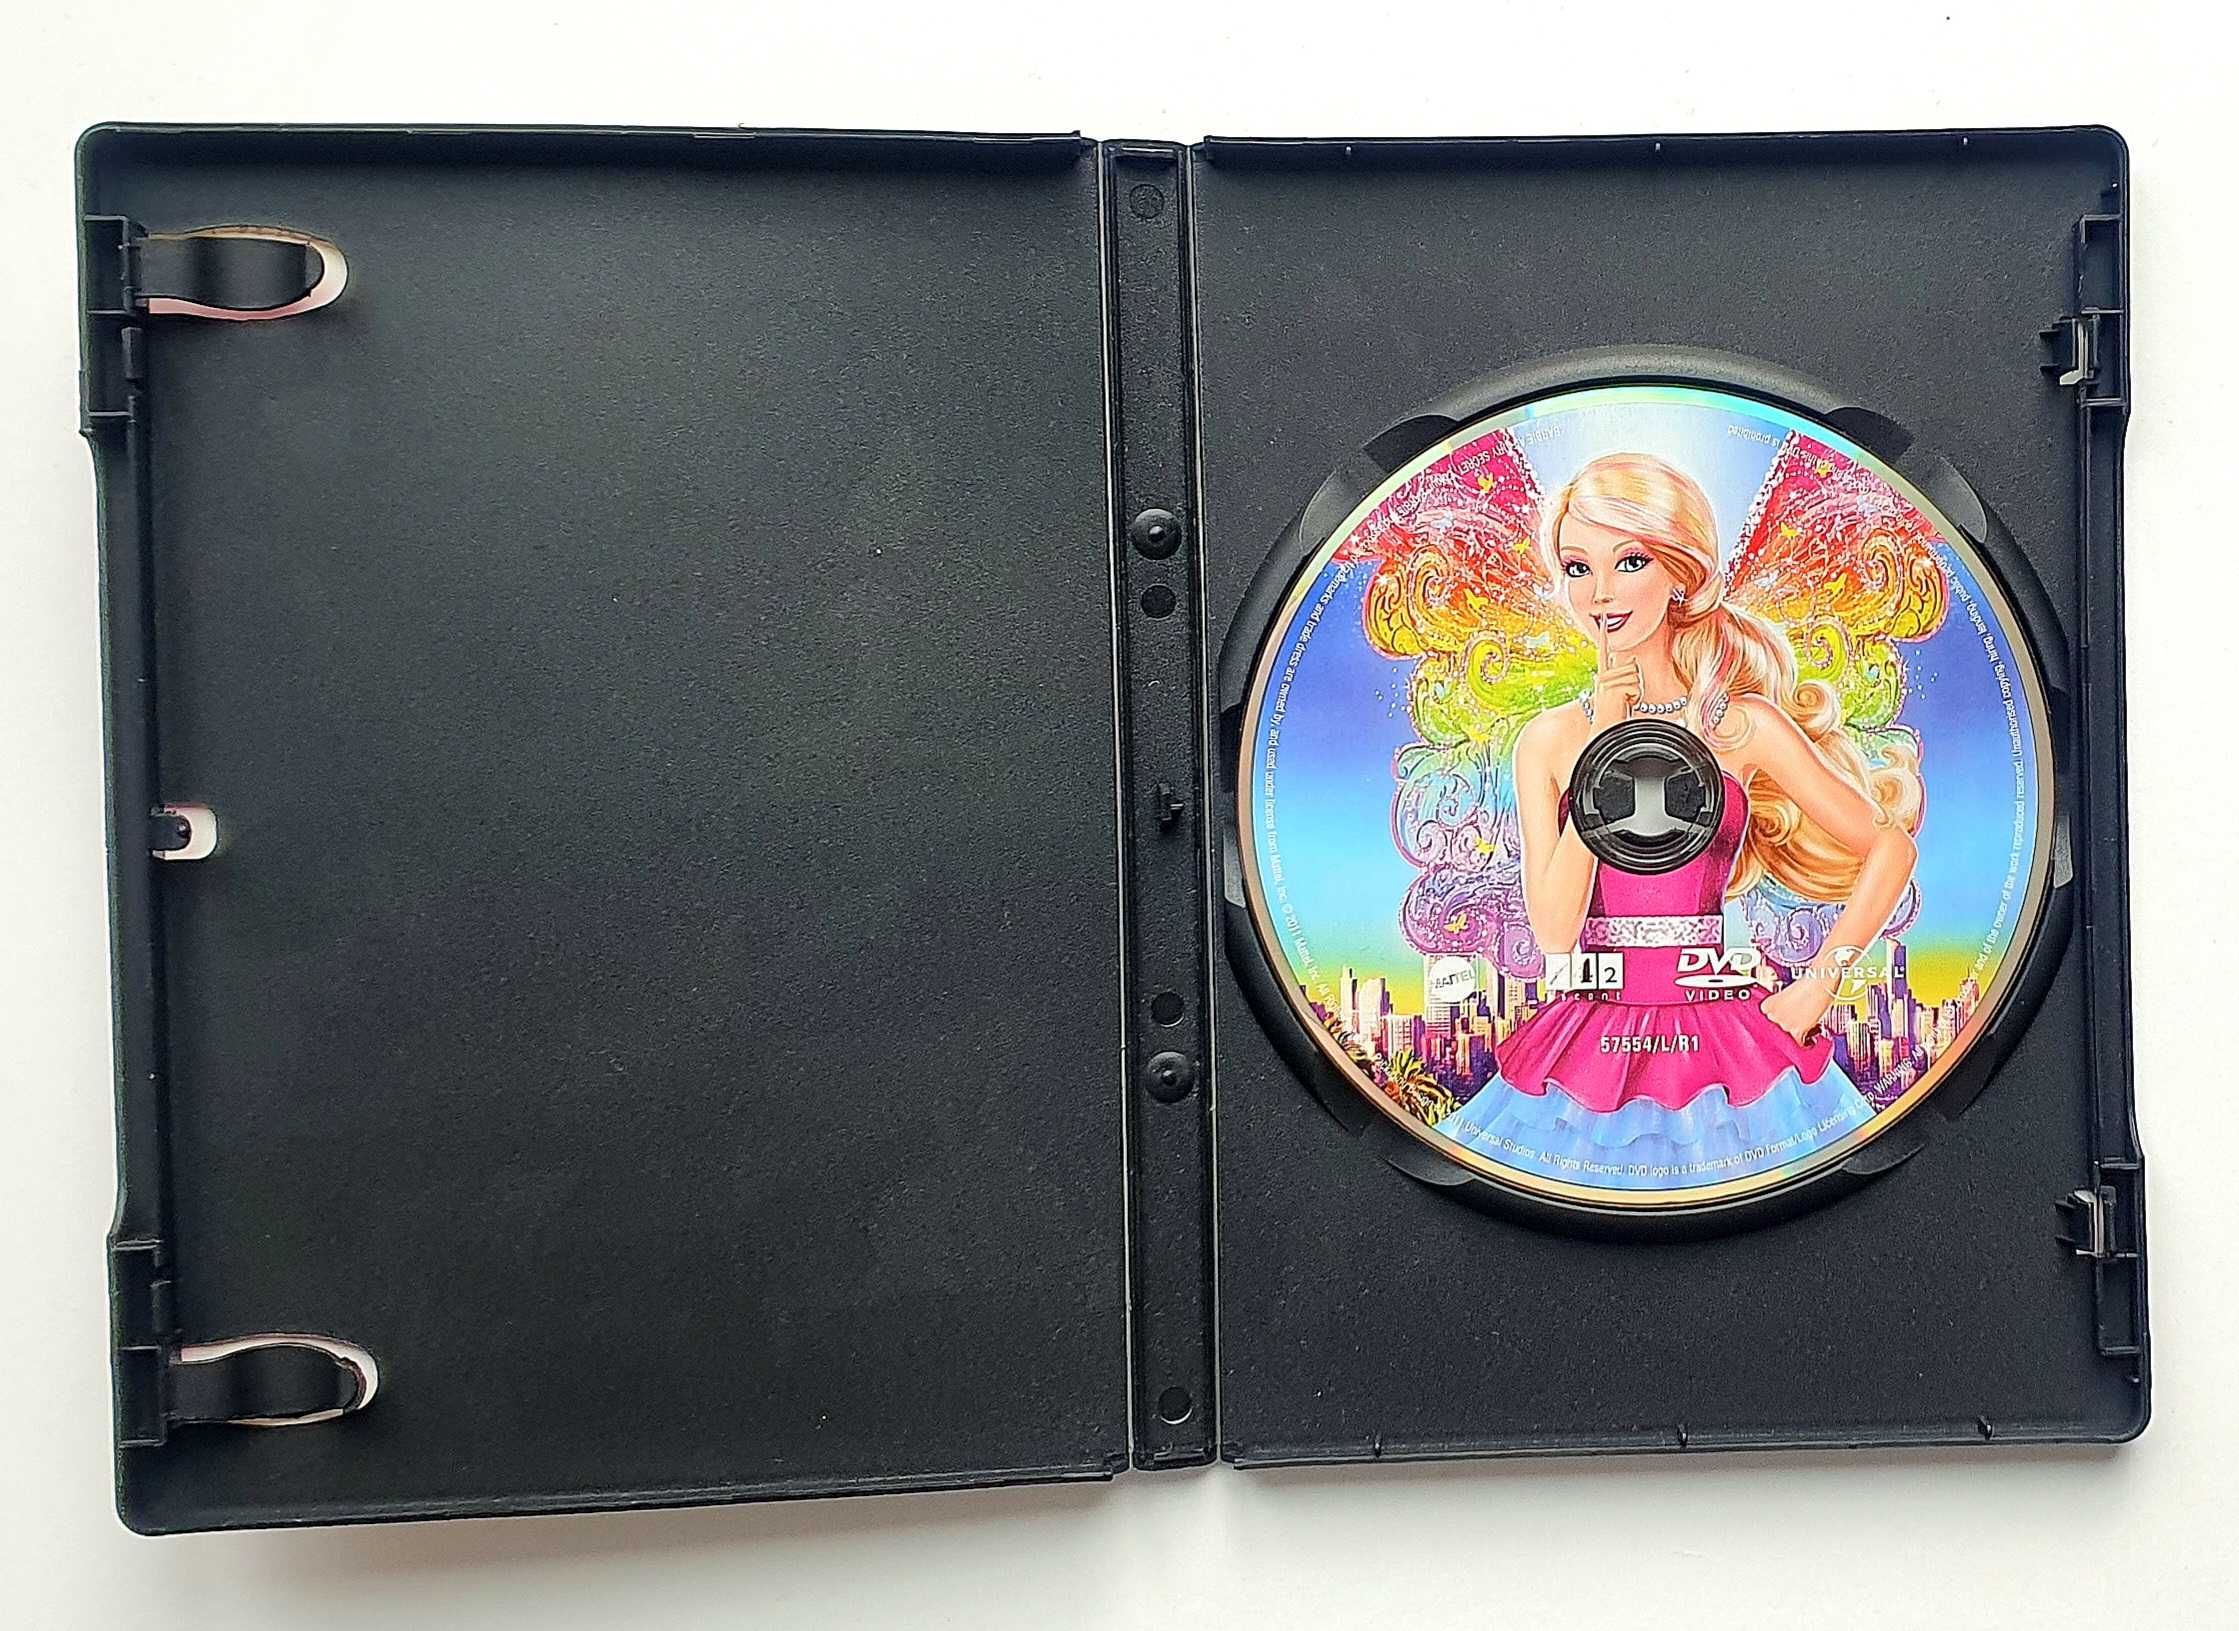 Barbie i Sekret Wróżek, film DVD